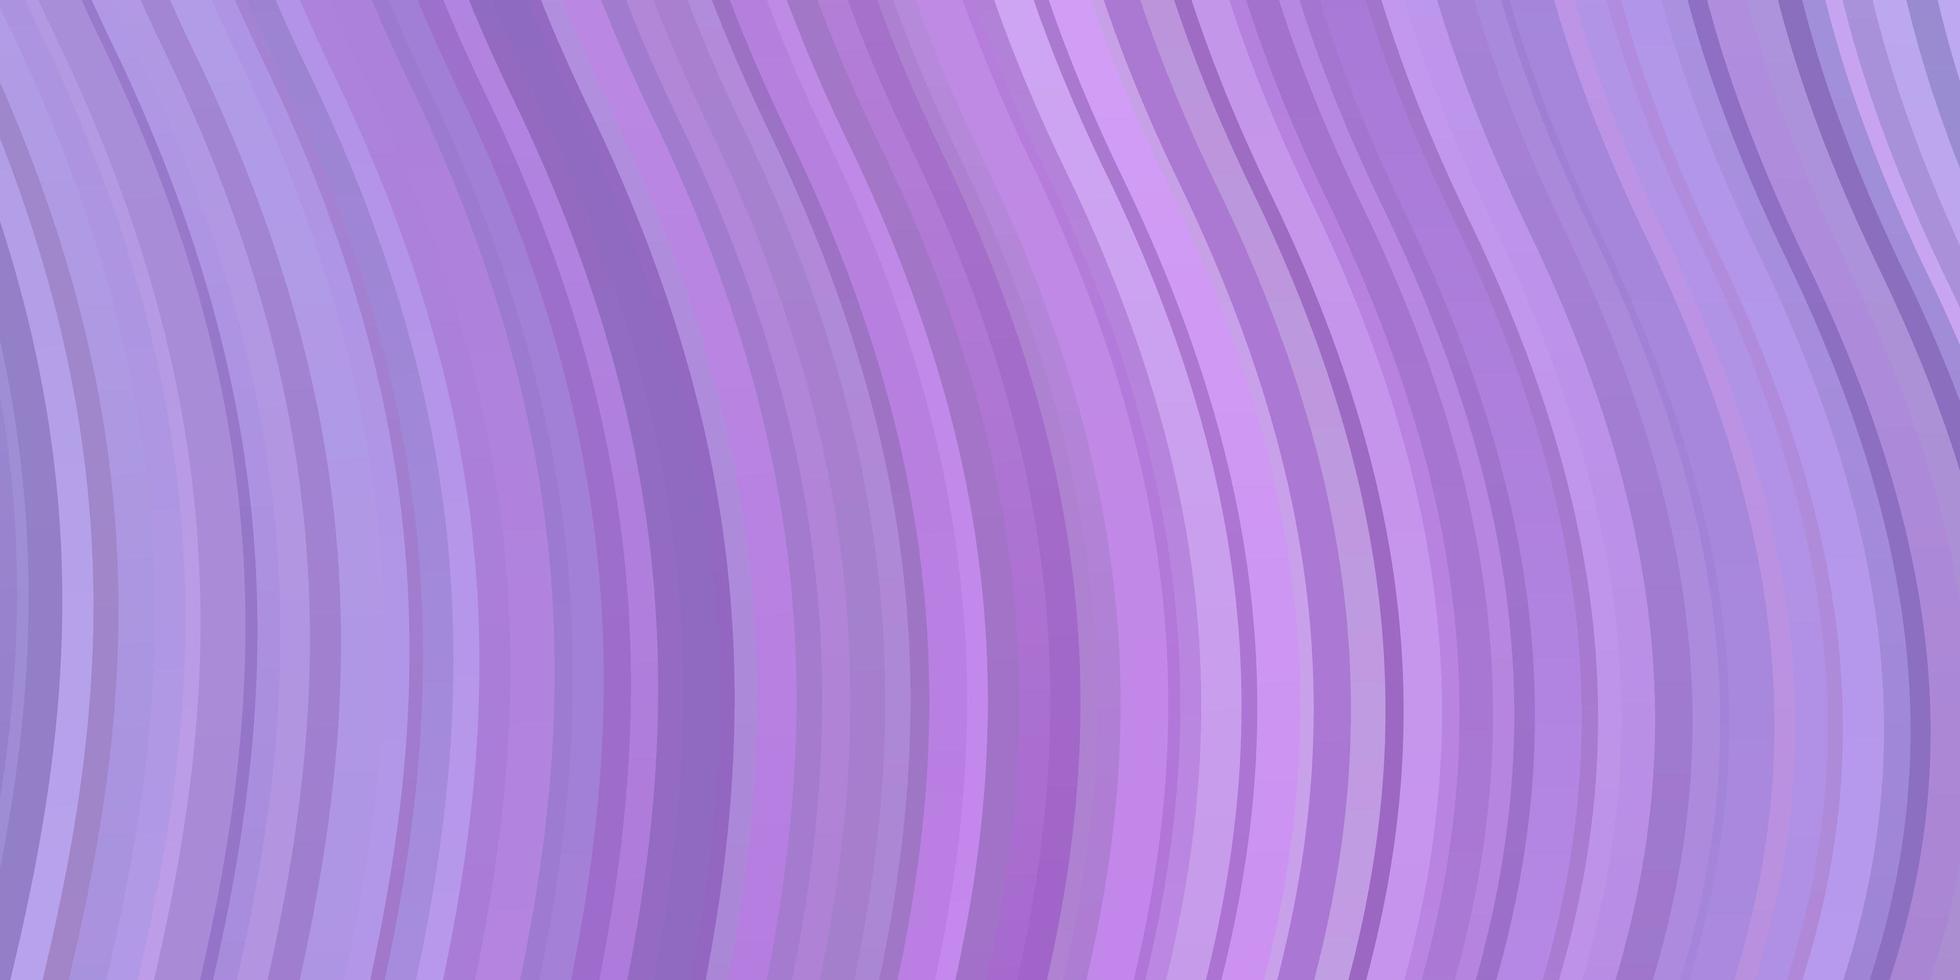 texture vecteur violet clair avec des lignes ironiques.